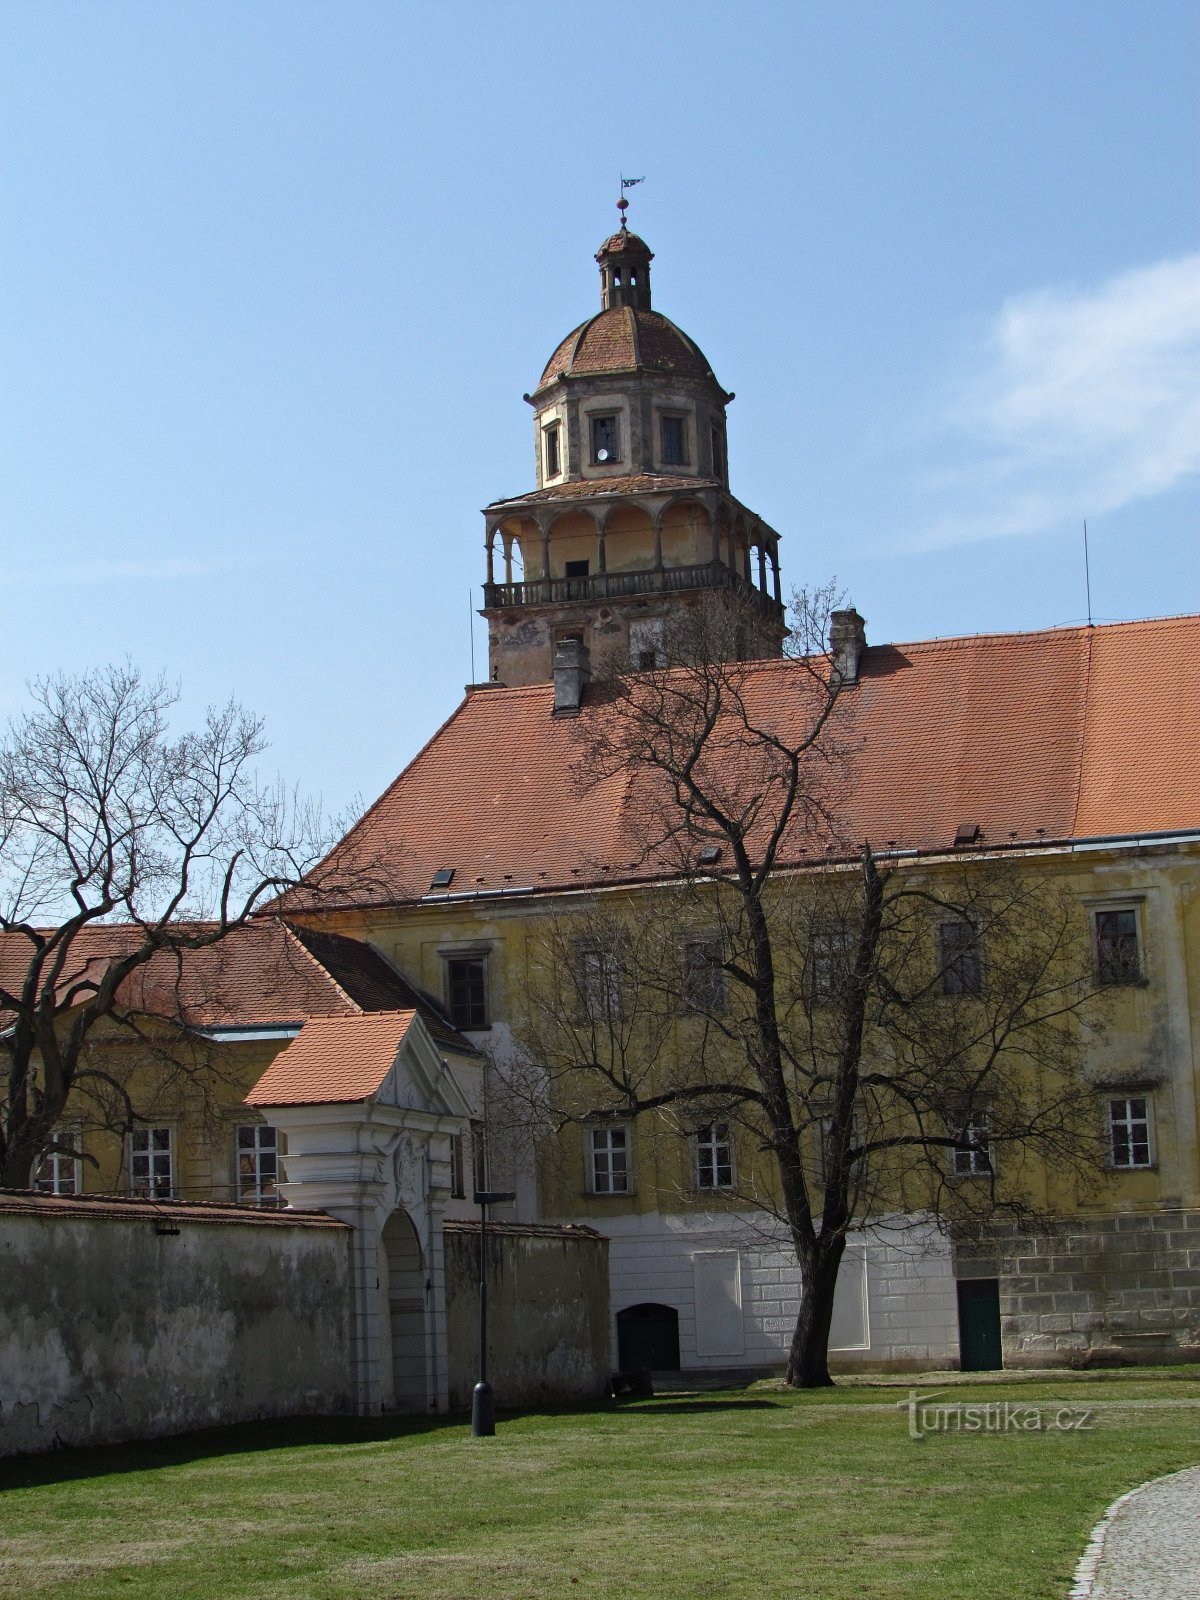 Moravskokrumlov slottskomplex